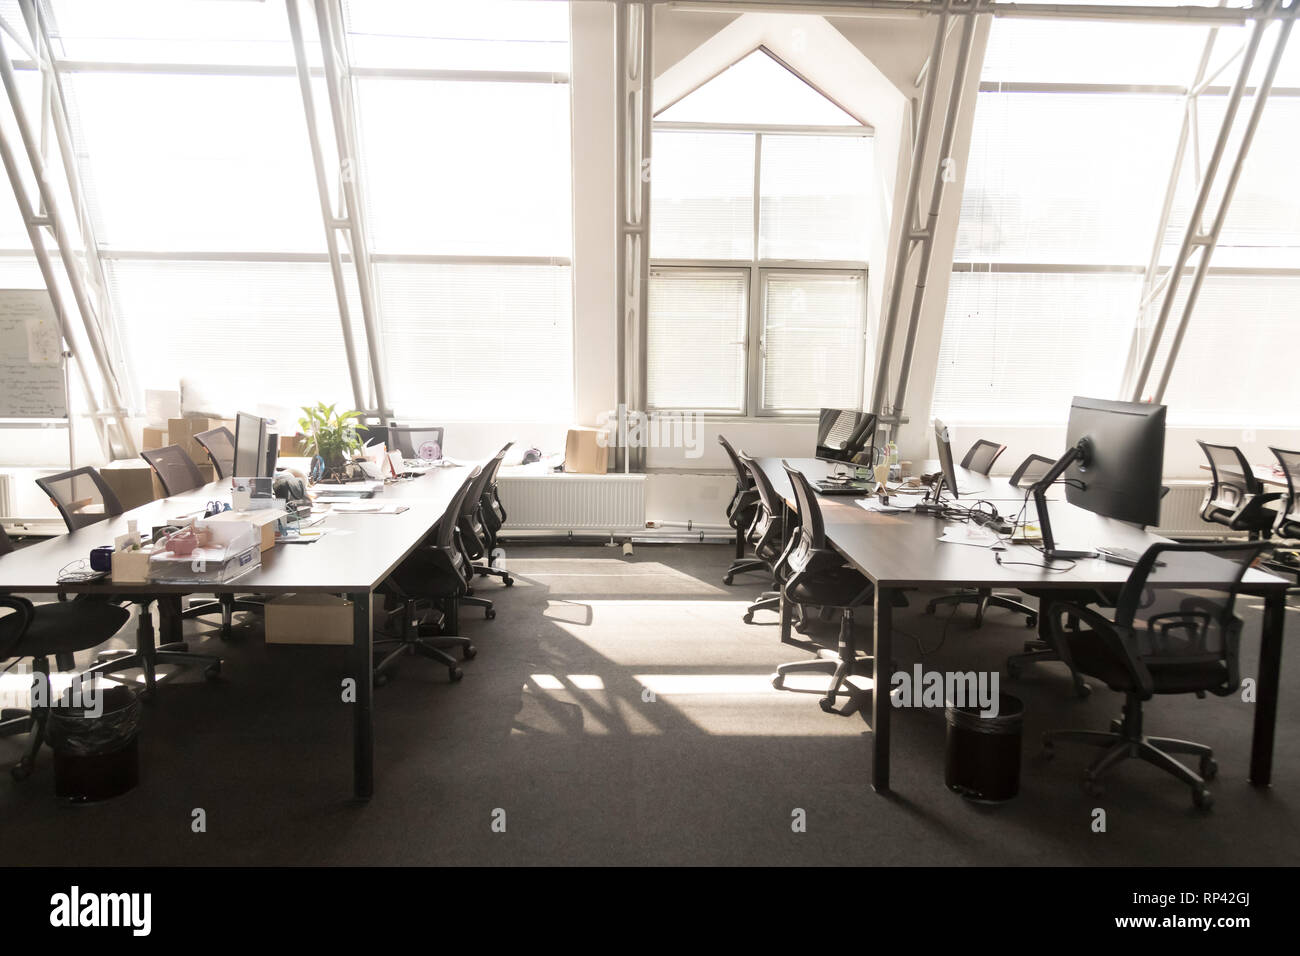 Luce moderno spazioso ufficio sala interna. Computer su tavoli sedie nere su ruote, la luce del sole attraverso le finestre panoramiche. Confortevole contempora Foto Stock